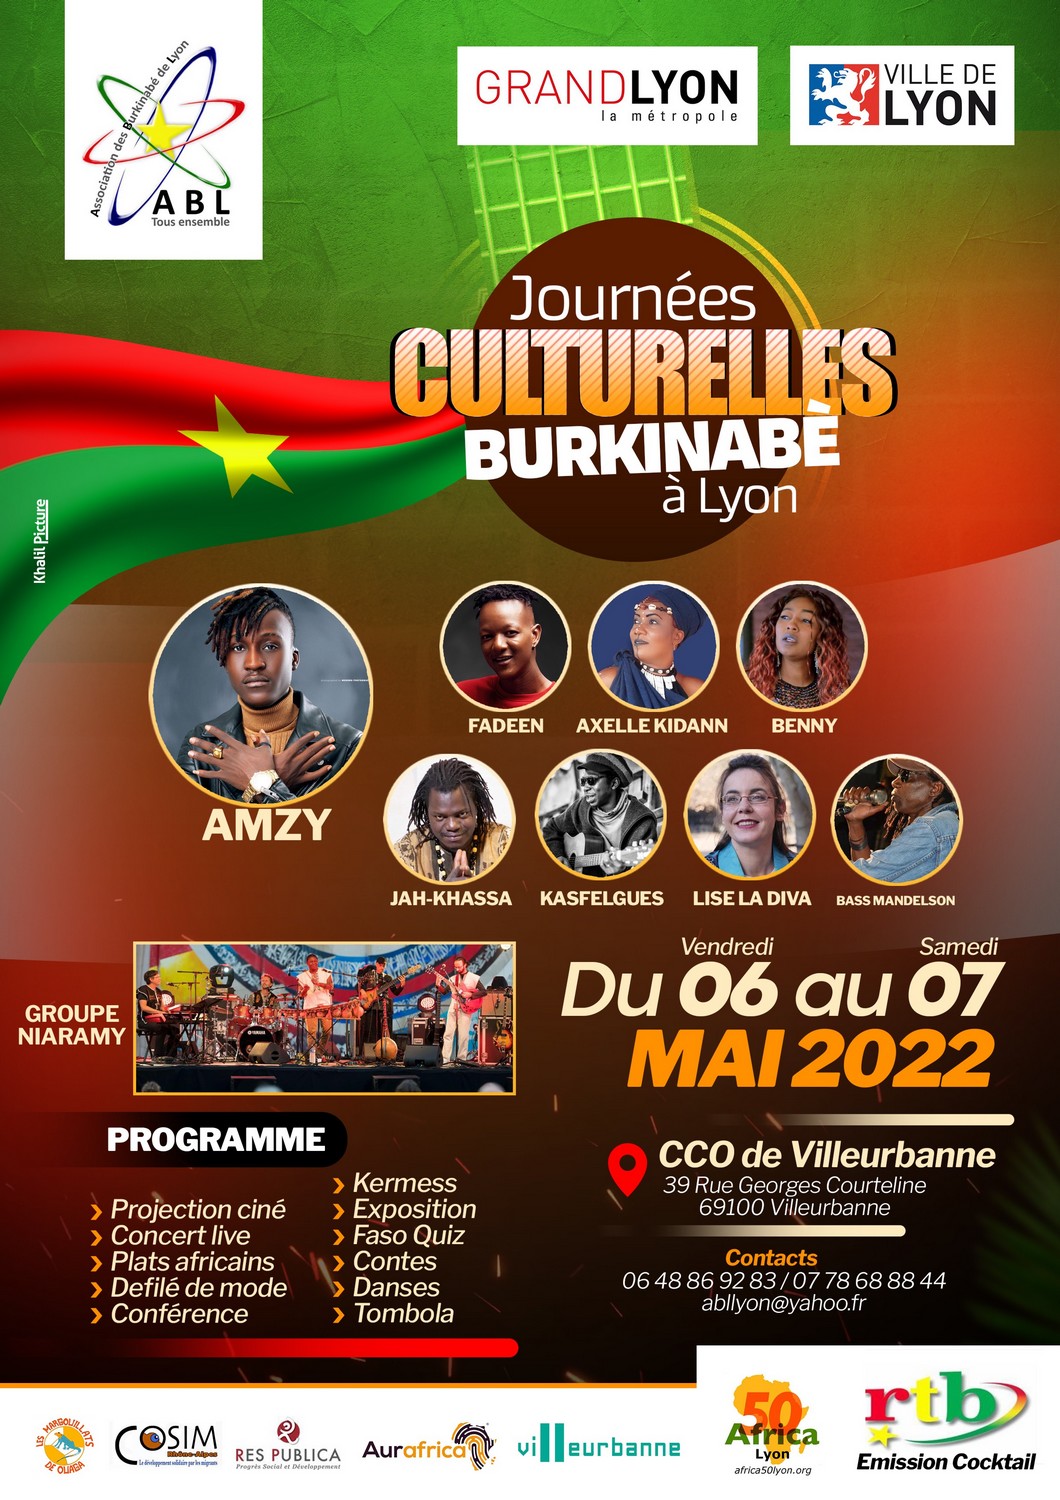 [BURKINA] L’ABL organise la 16e édition des Journées Culturelles Burkinabé de Lyon couvert par la RTB les 6 et 7 mai 2022